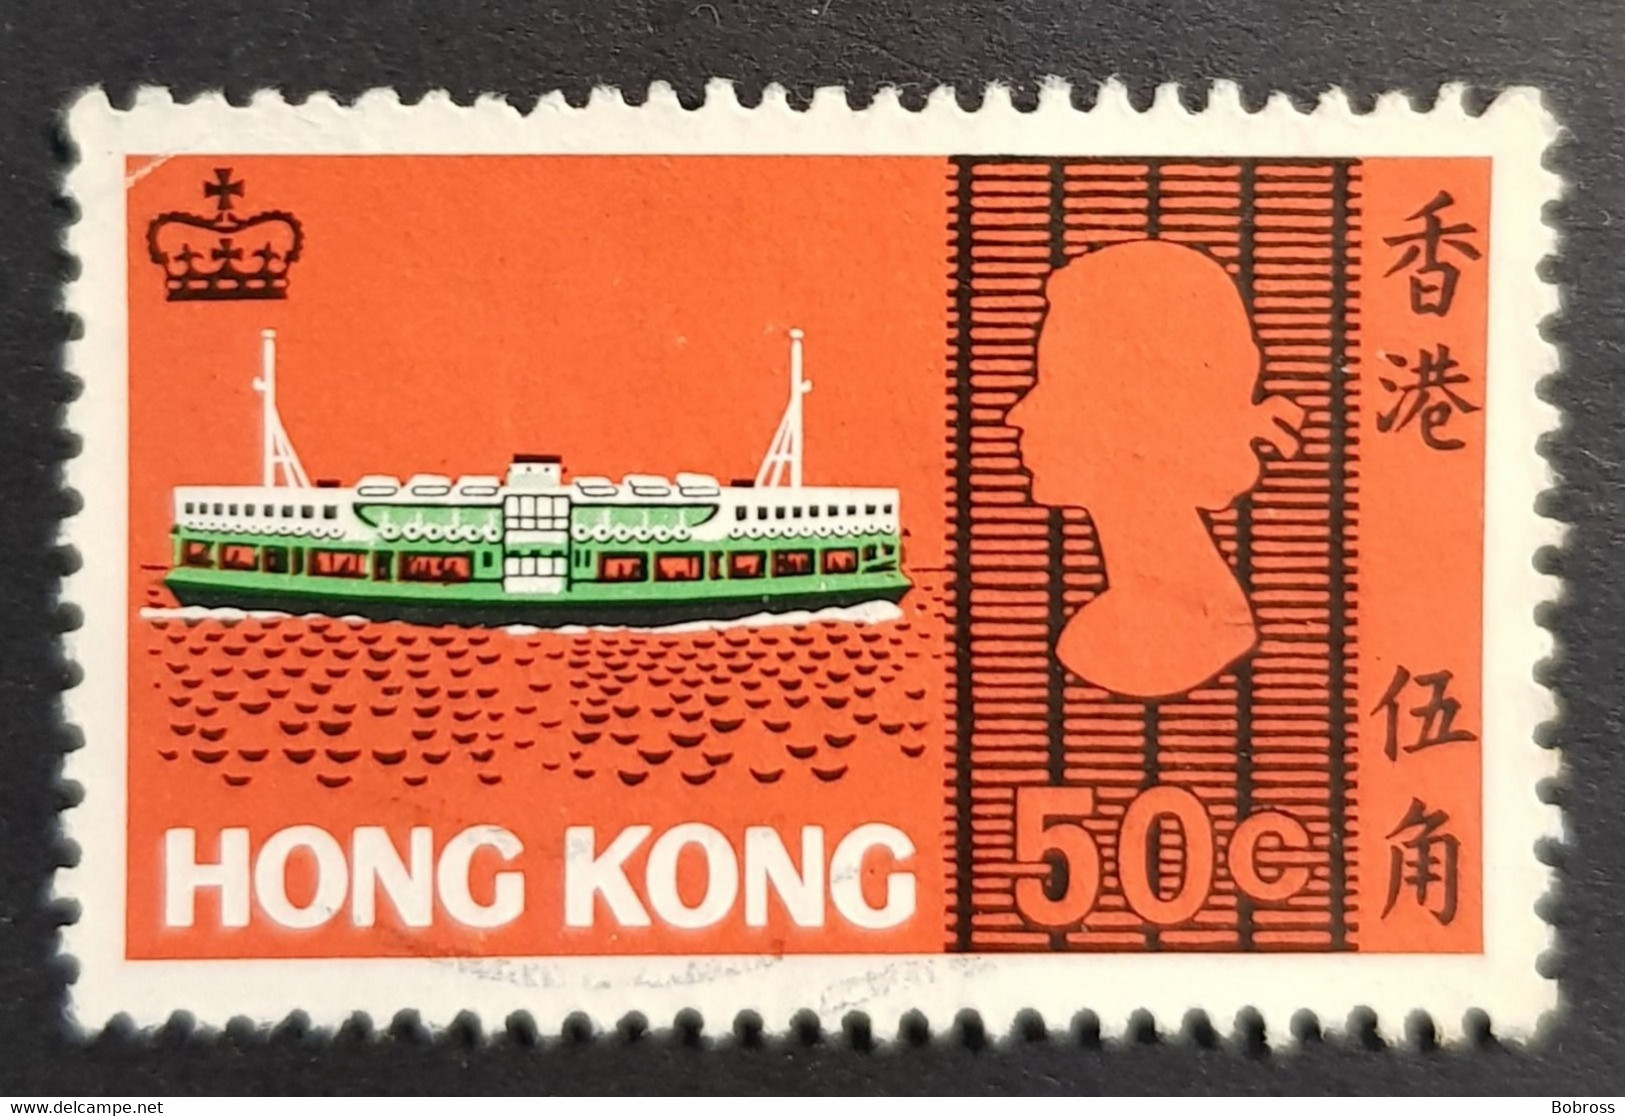 1968 Sea Craft, Hong Kong, China, Used - Used Stamps